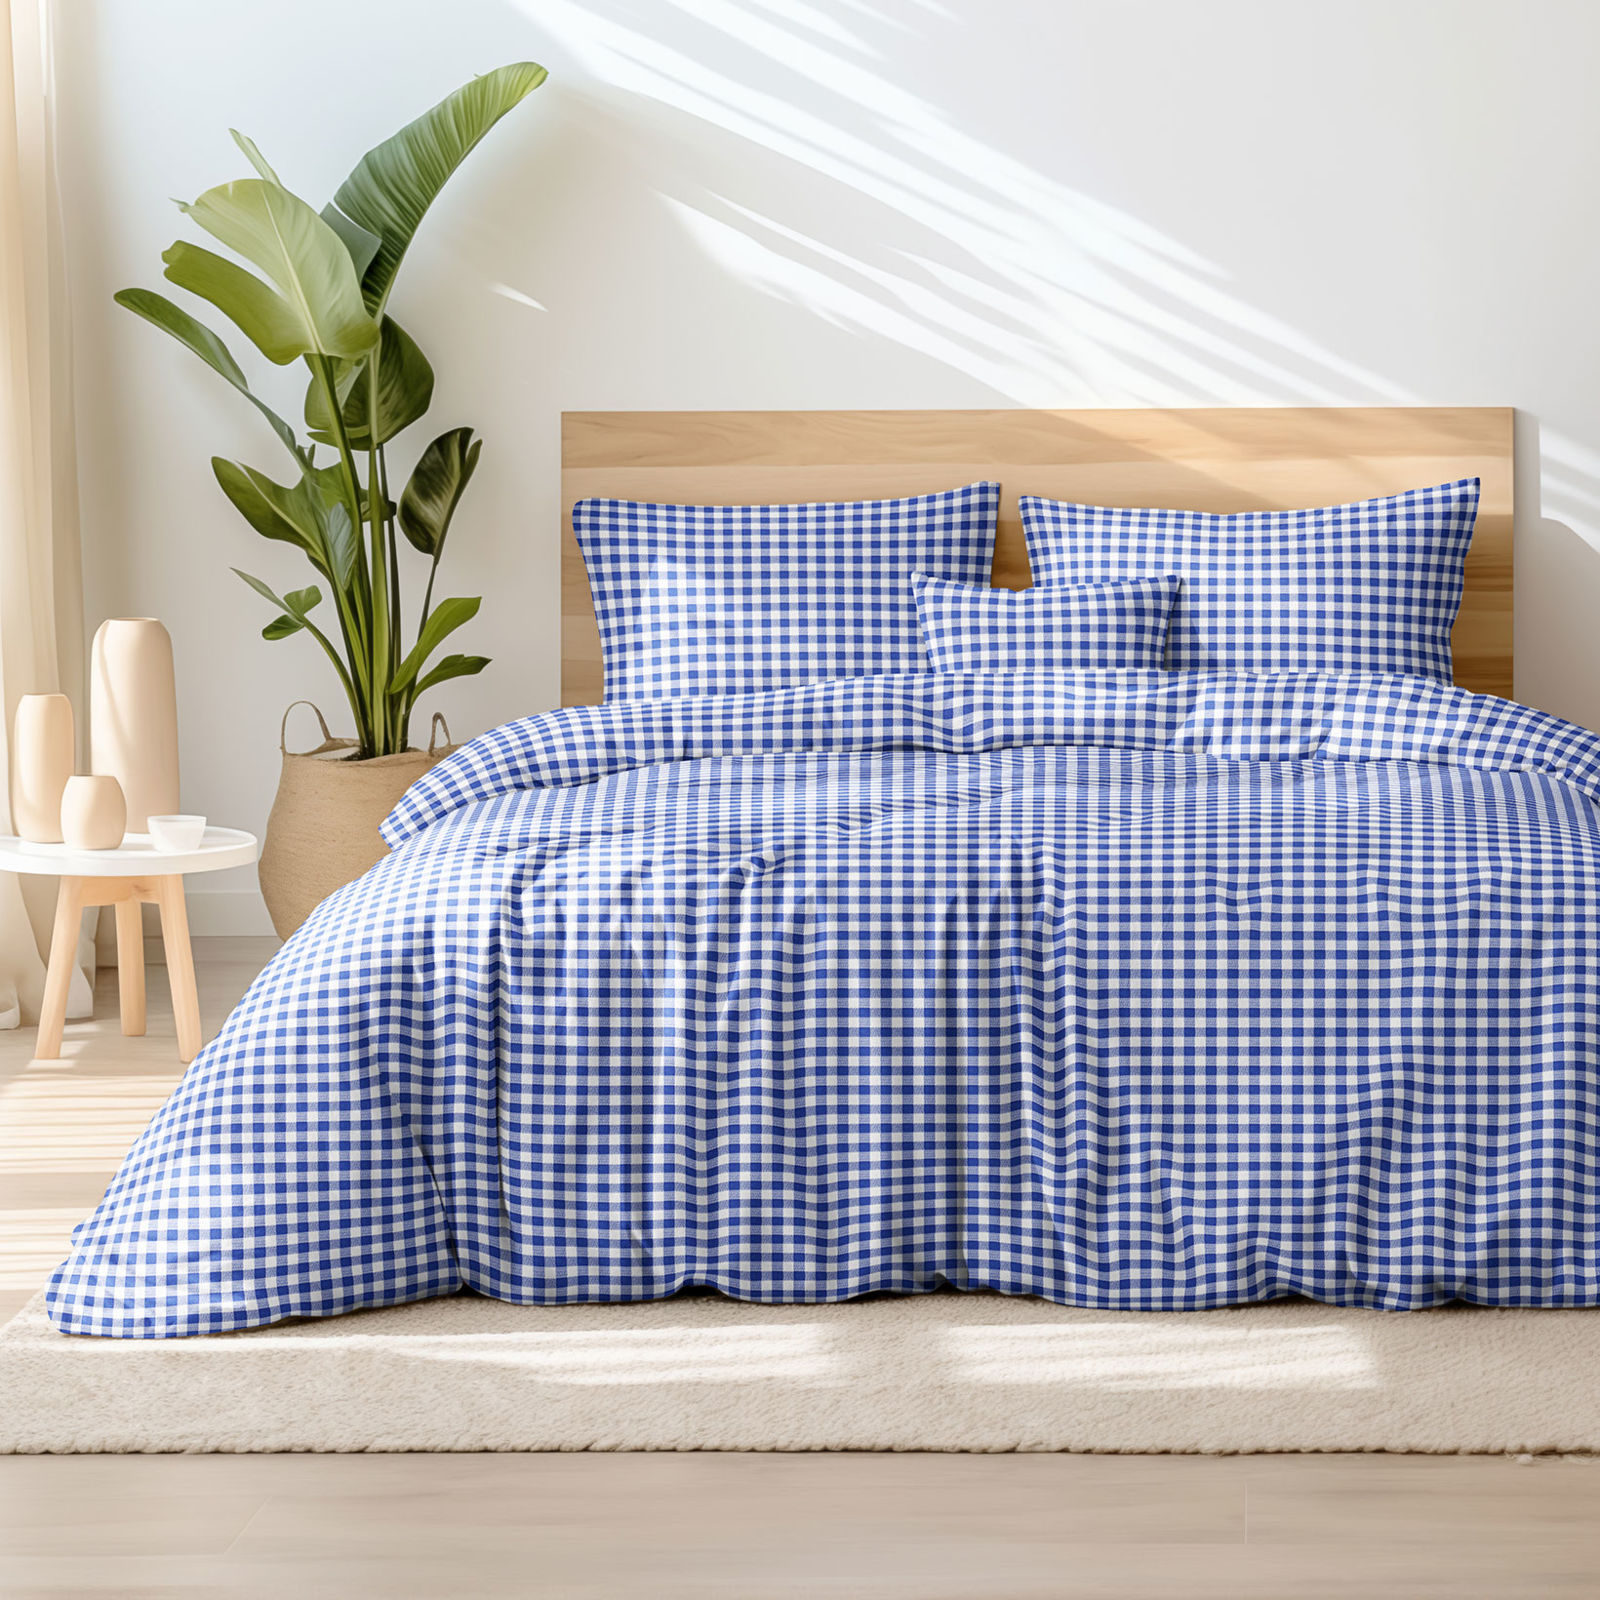 Tradičné bavlnené posteľné obliečky - modré a biele kocky